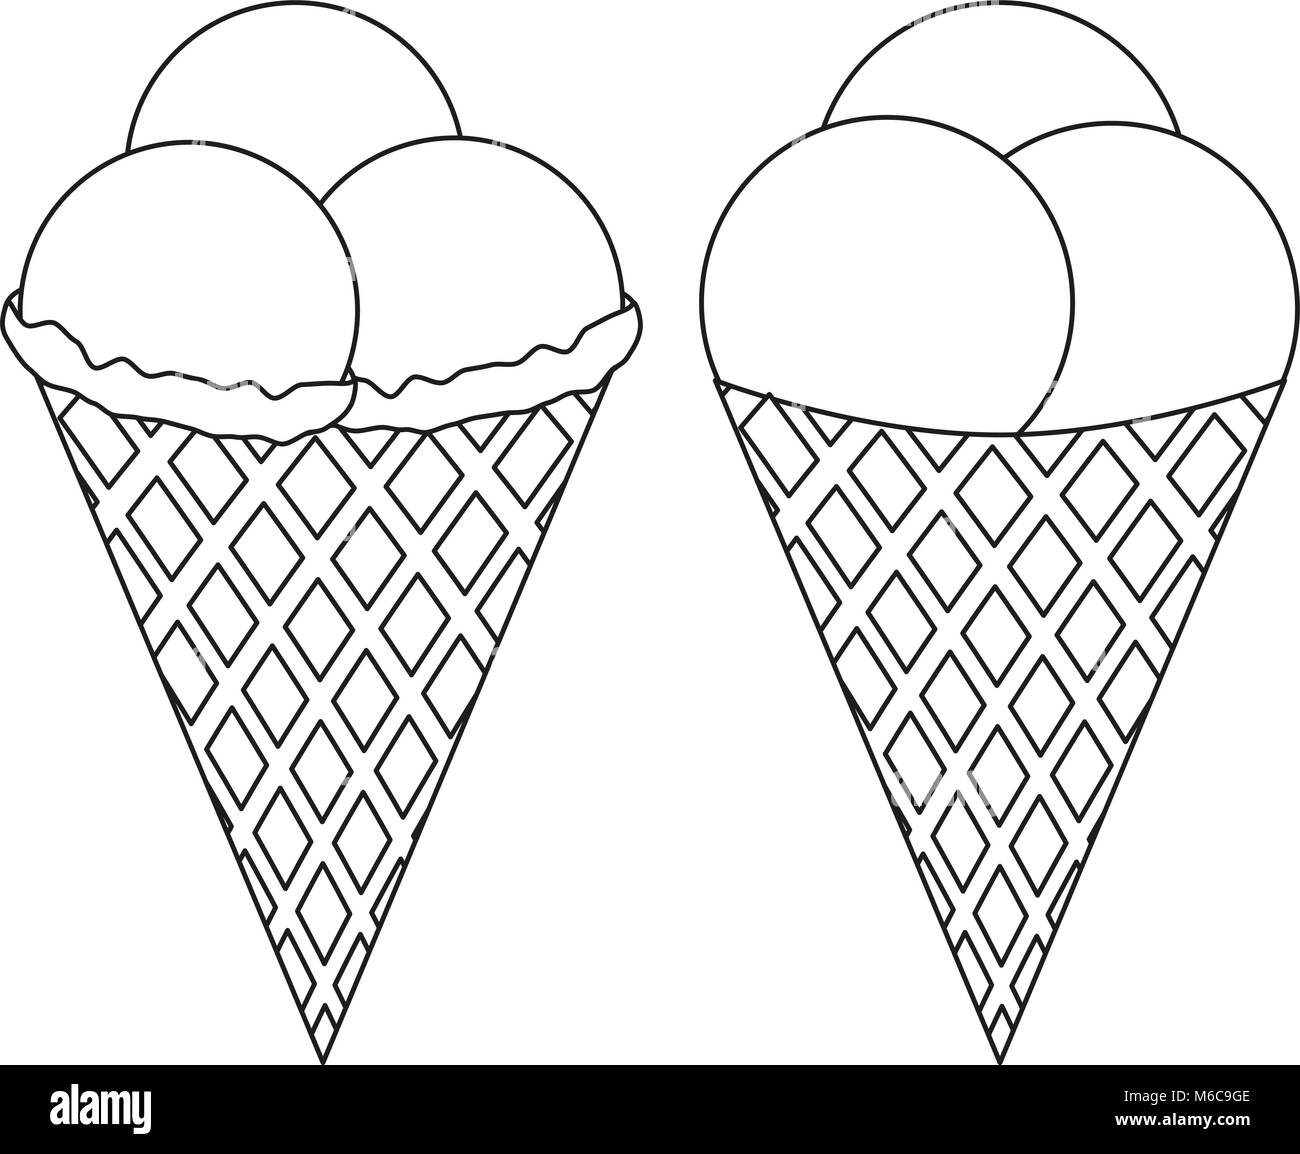 Раскраска мороженое рожок с тремя шариками